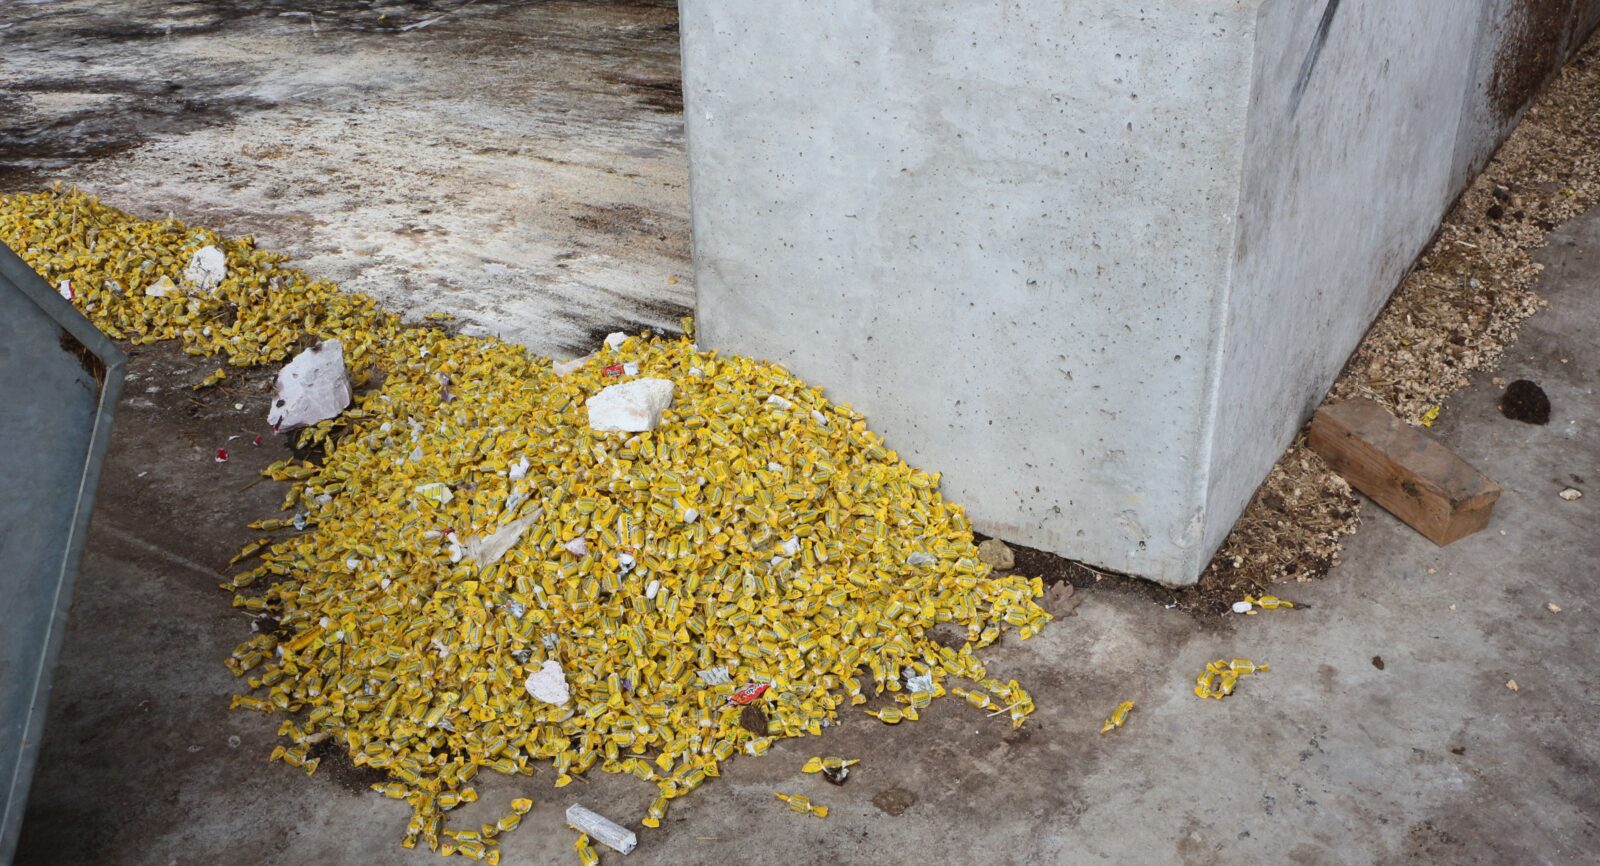 Der Produktionsausschuss aus der Ricola-Fabrik in Laufen landet als verwertbare Biomasse ebenfalls im Fermenter.